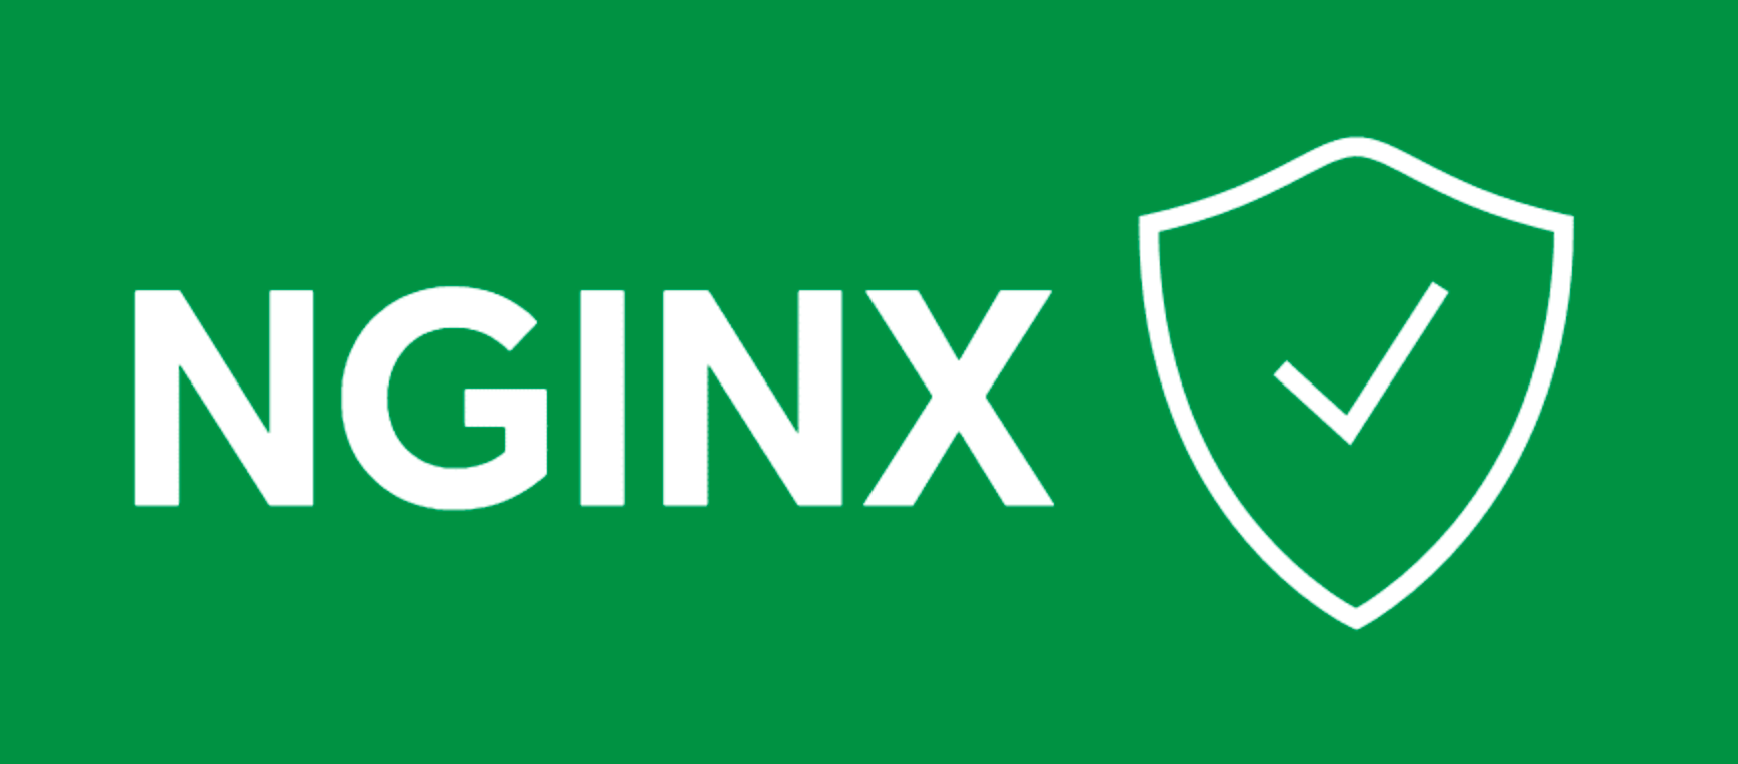 Một vài bước để tăng cường bảo mật cho máy chủ Nginx | WhiteHat.vn